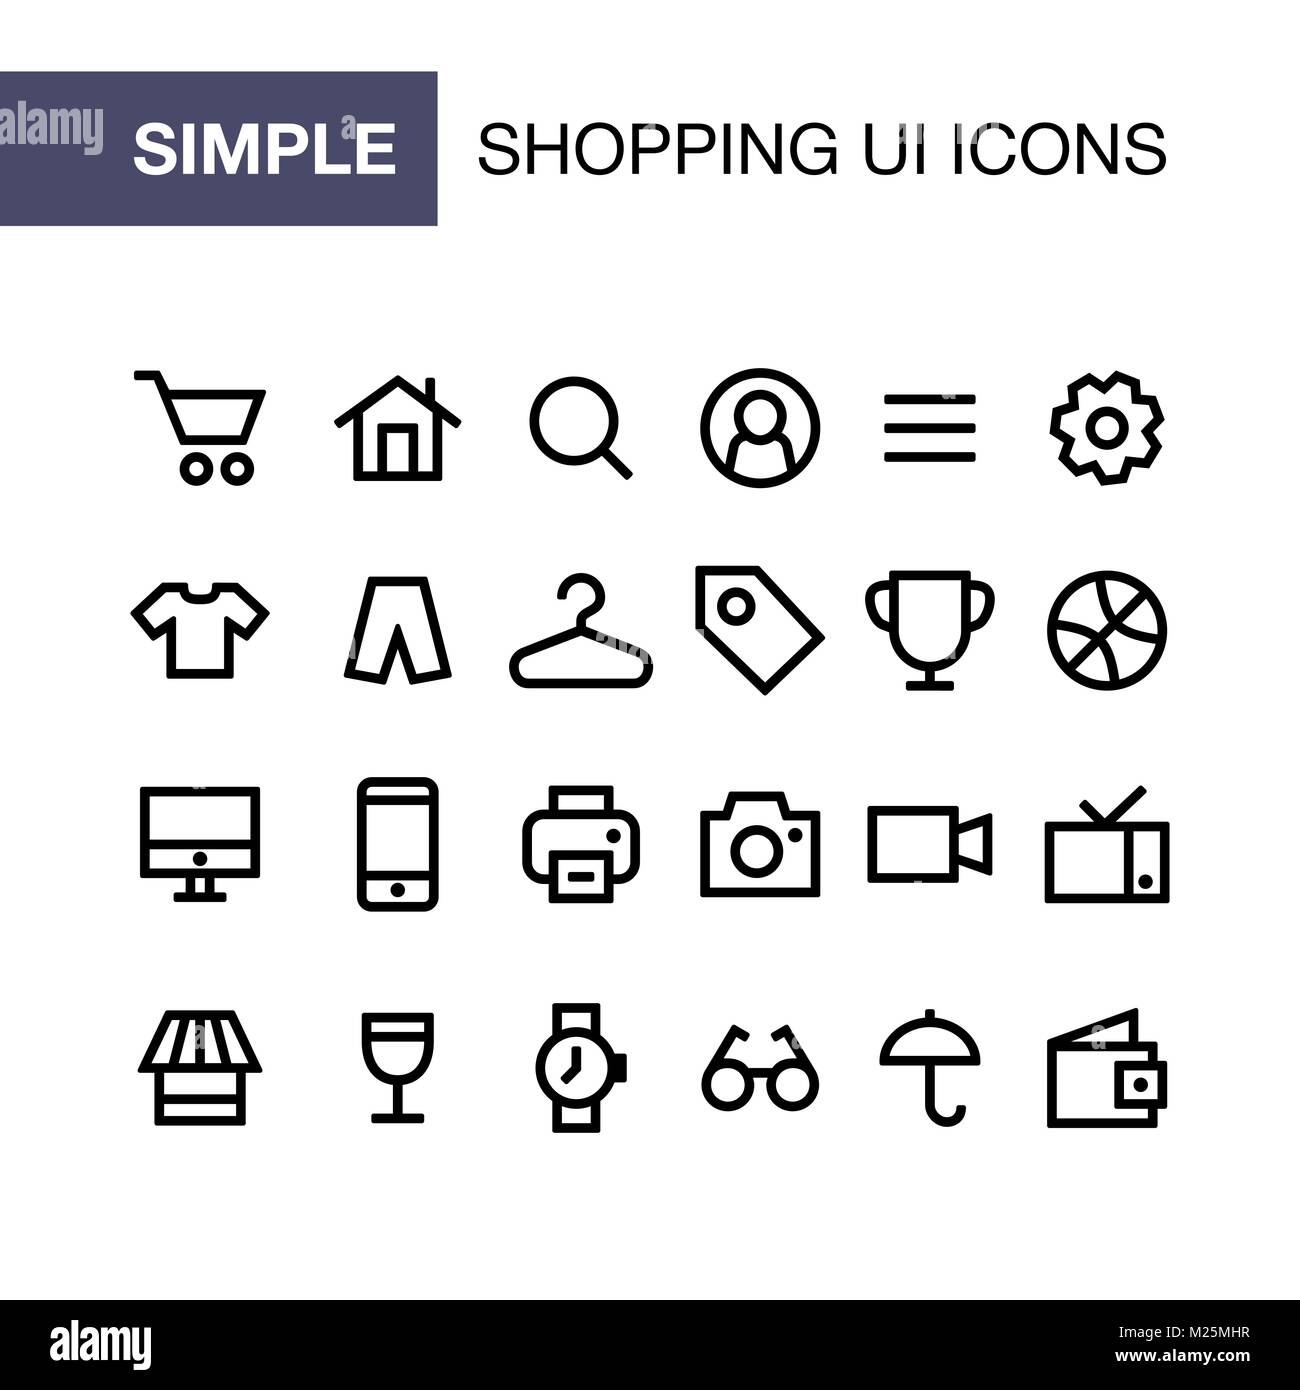 flat ui design icons